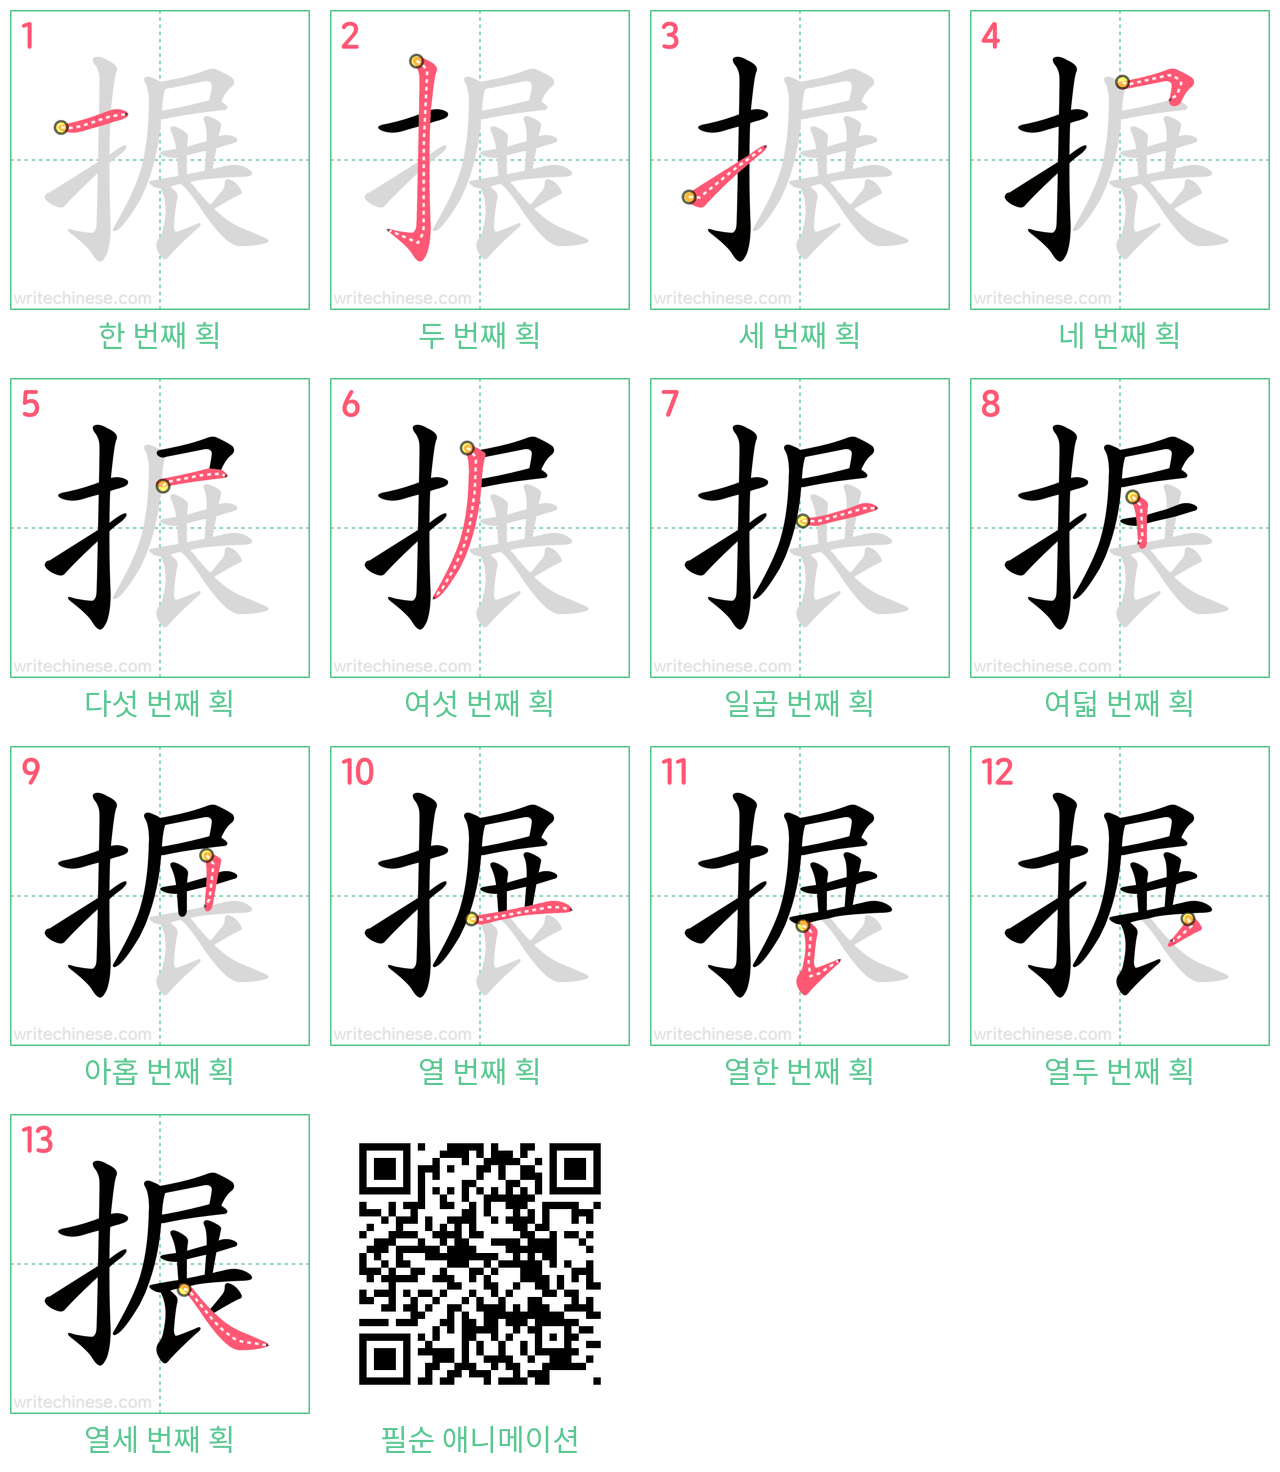 搌 step-by-step stroke order diagrams